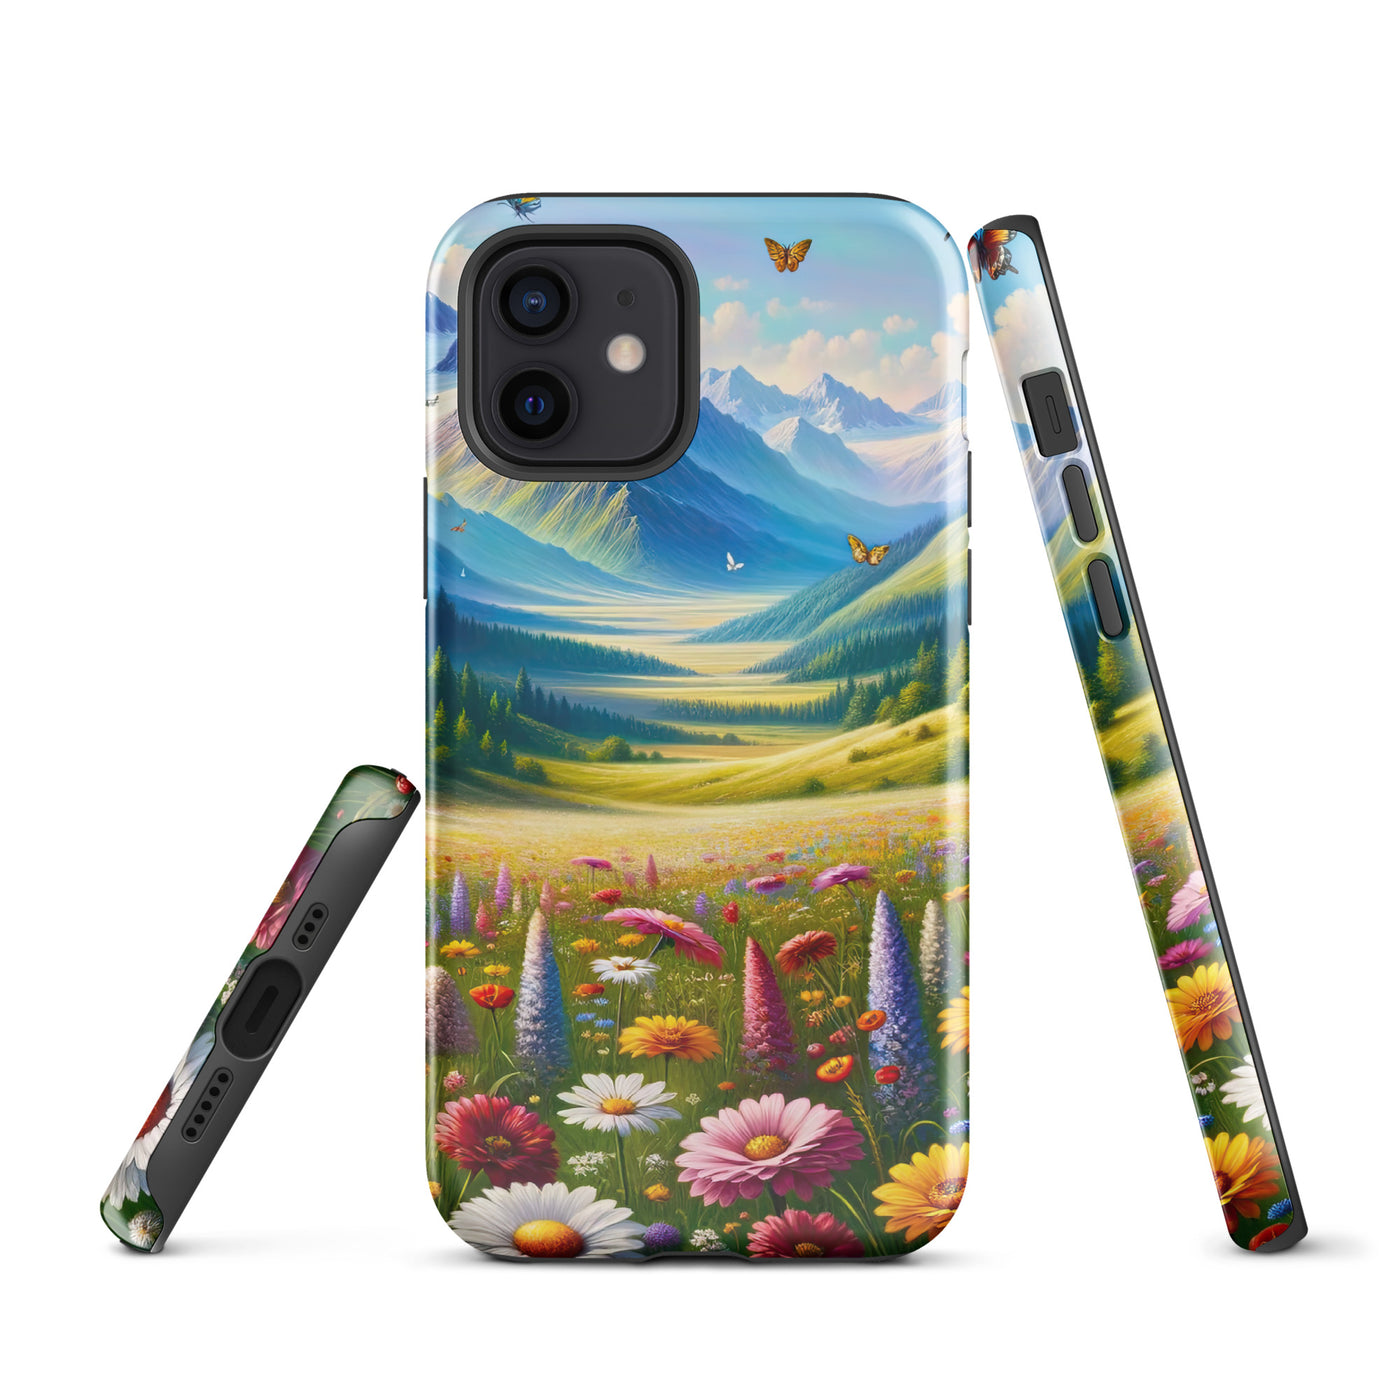 Ölgemälde einer ruhigen Almwiese, Oase mit bunter Wildblumenpracht - iPhone Schutzhülle (robust) camping xxx yyy zzz iPhone 12